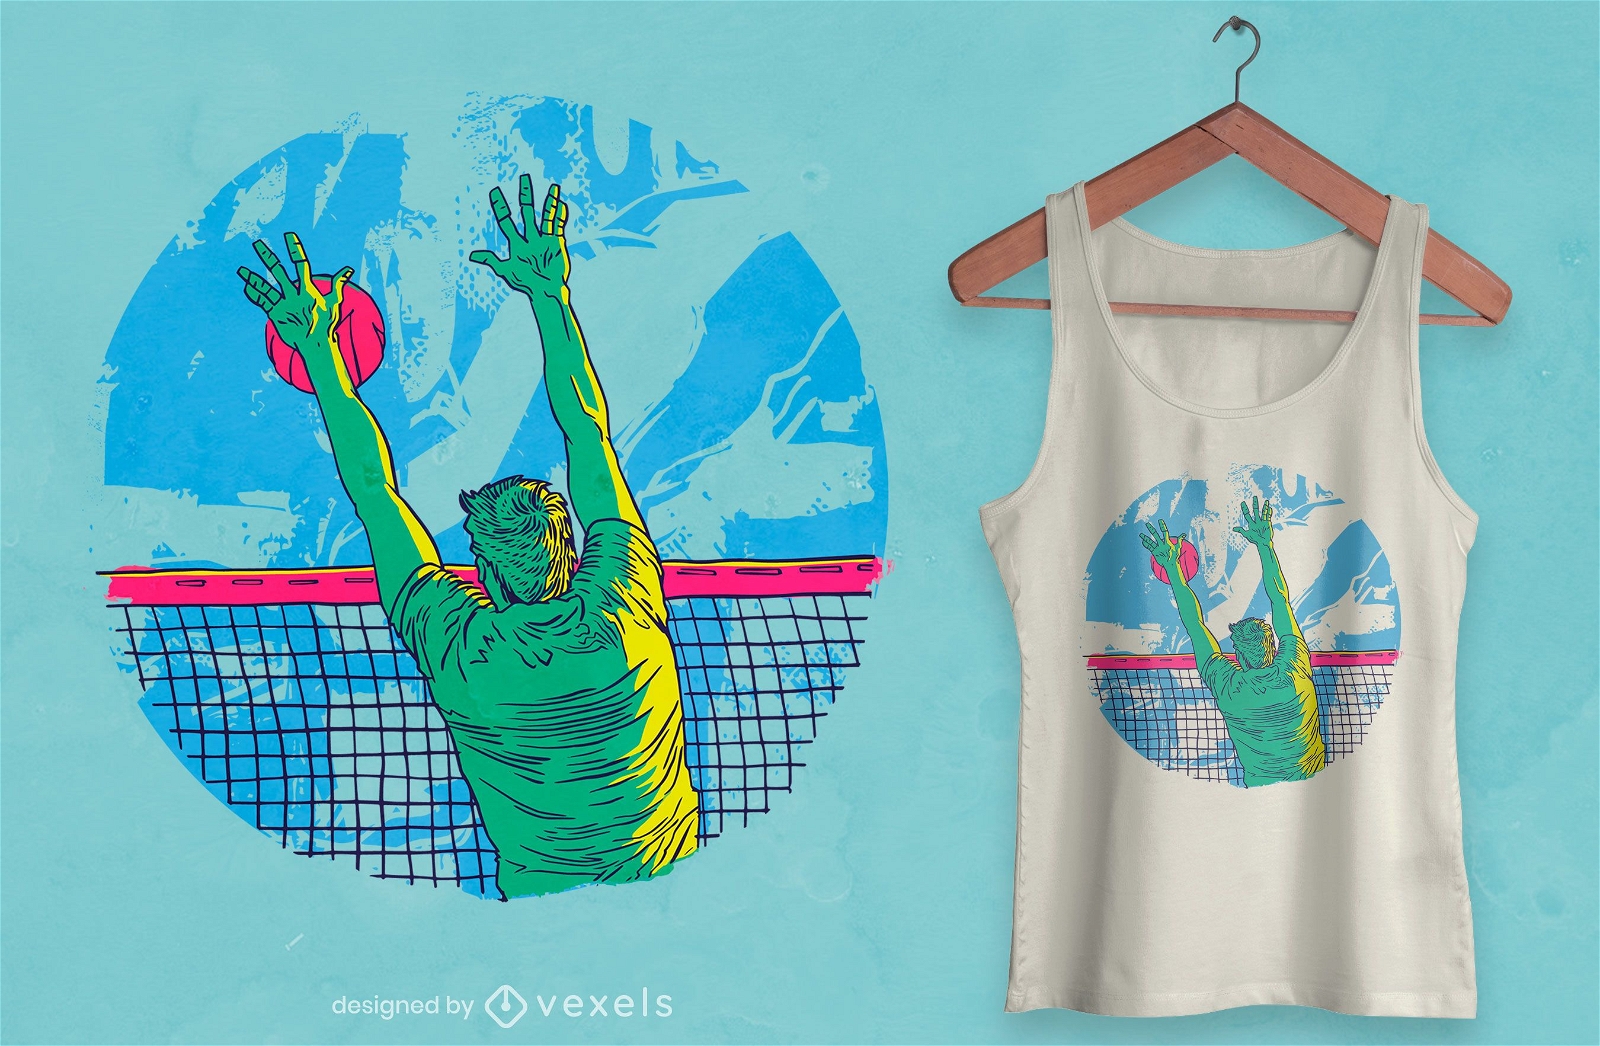 Volleyball player sport t-shirt design